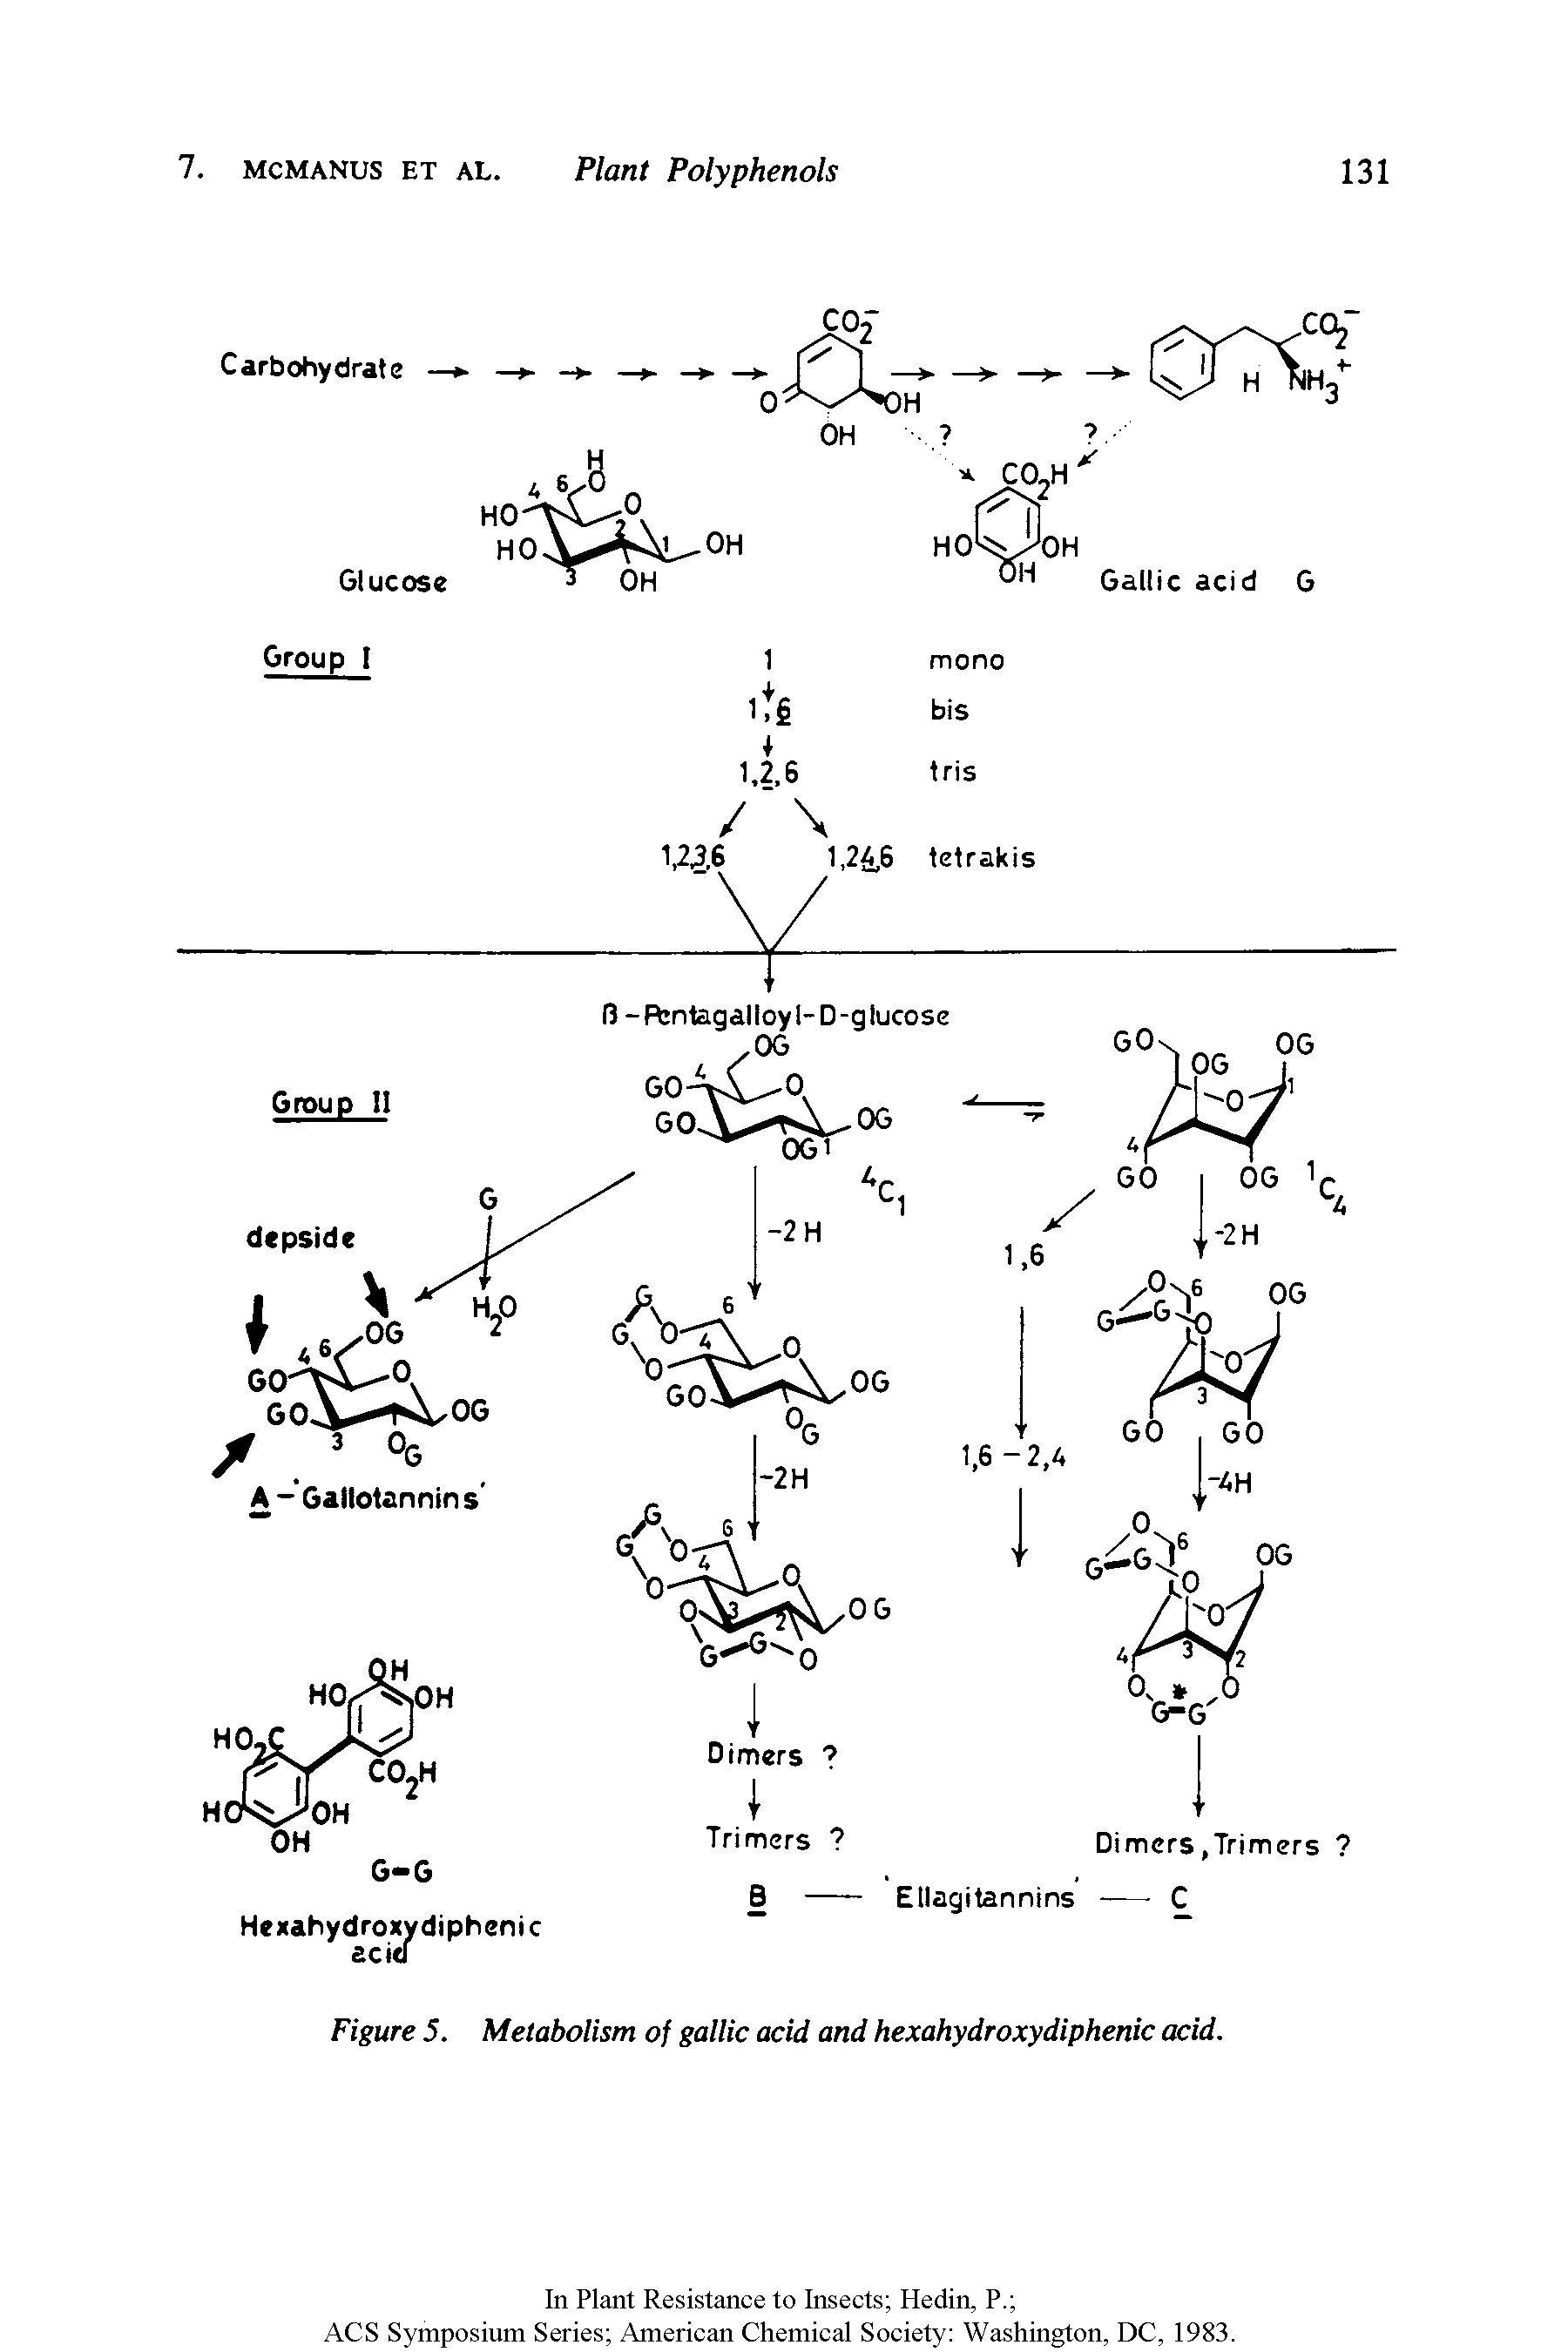 Figure 5. Metabolism of gallic acid and hexahydroxydiphenic acid.